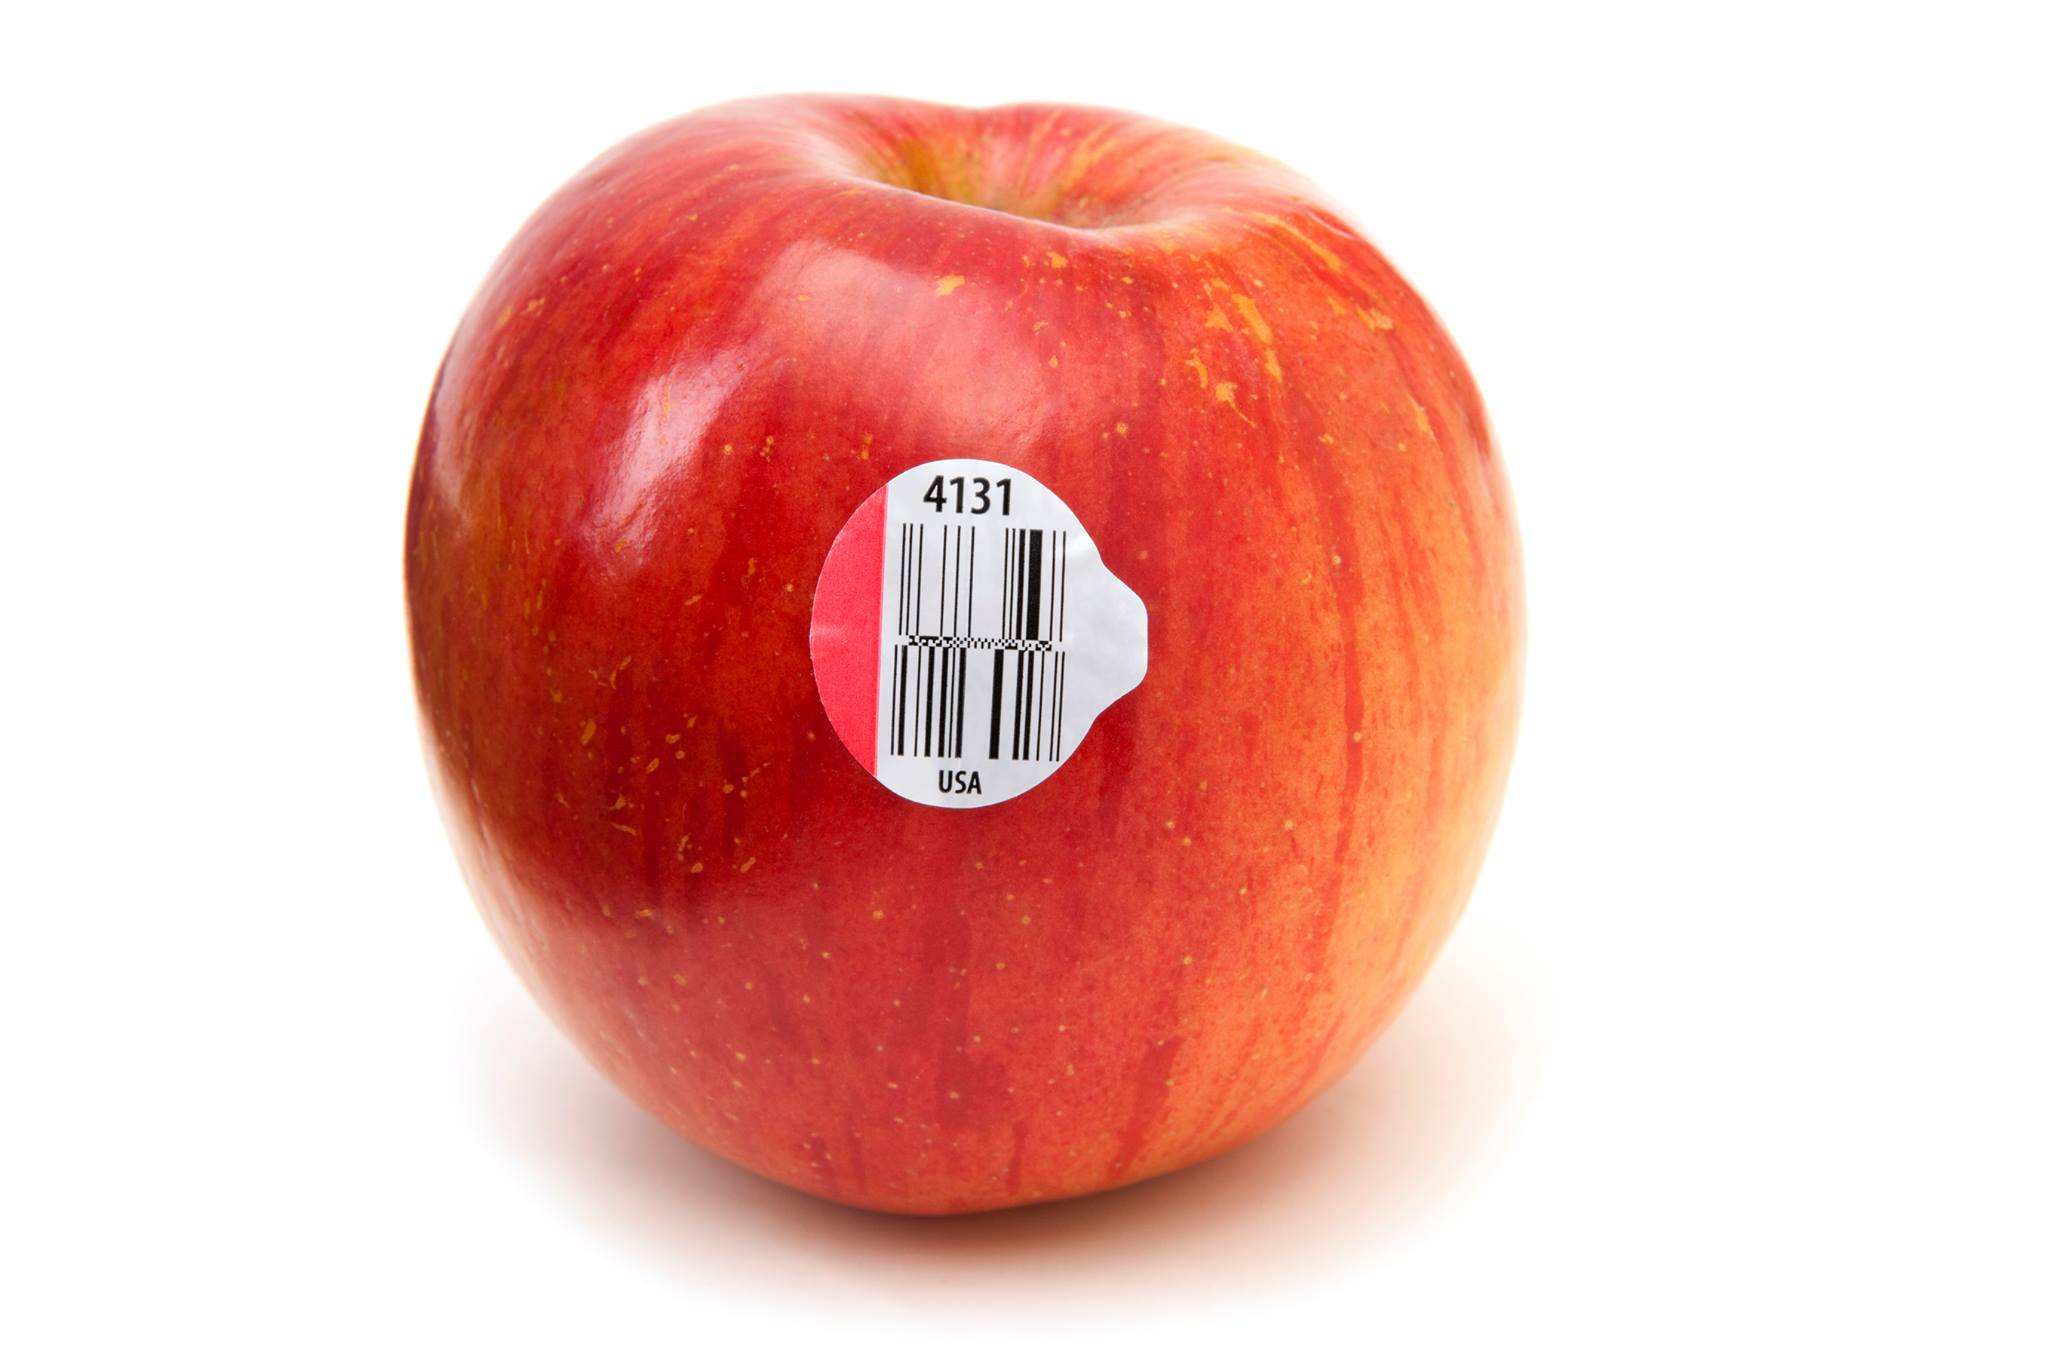 Entenda o que significam os números nas etiquetas de frutas e legumes